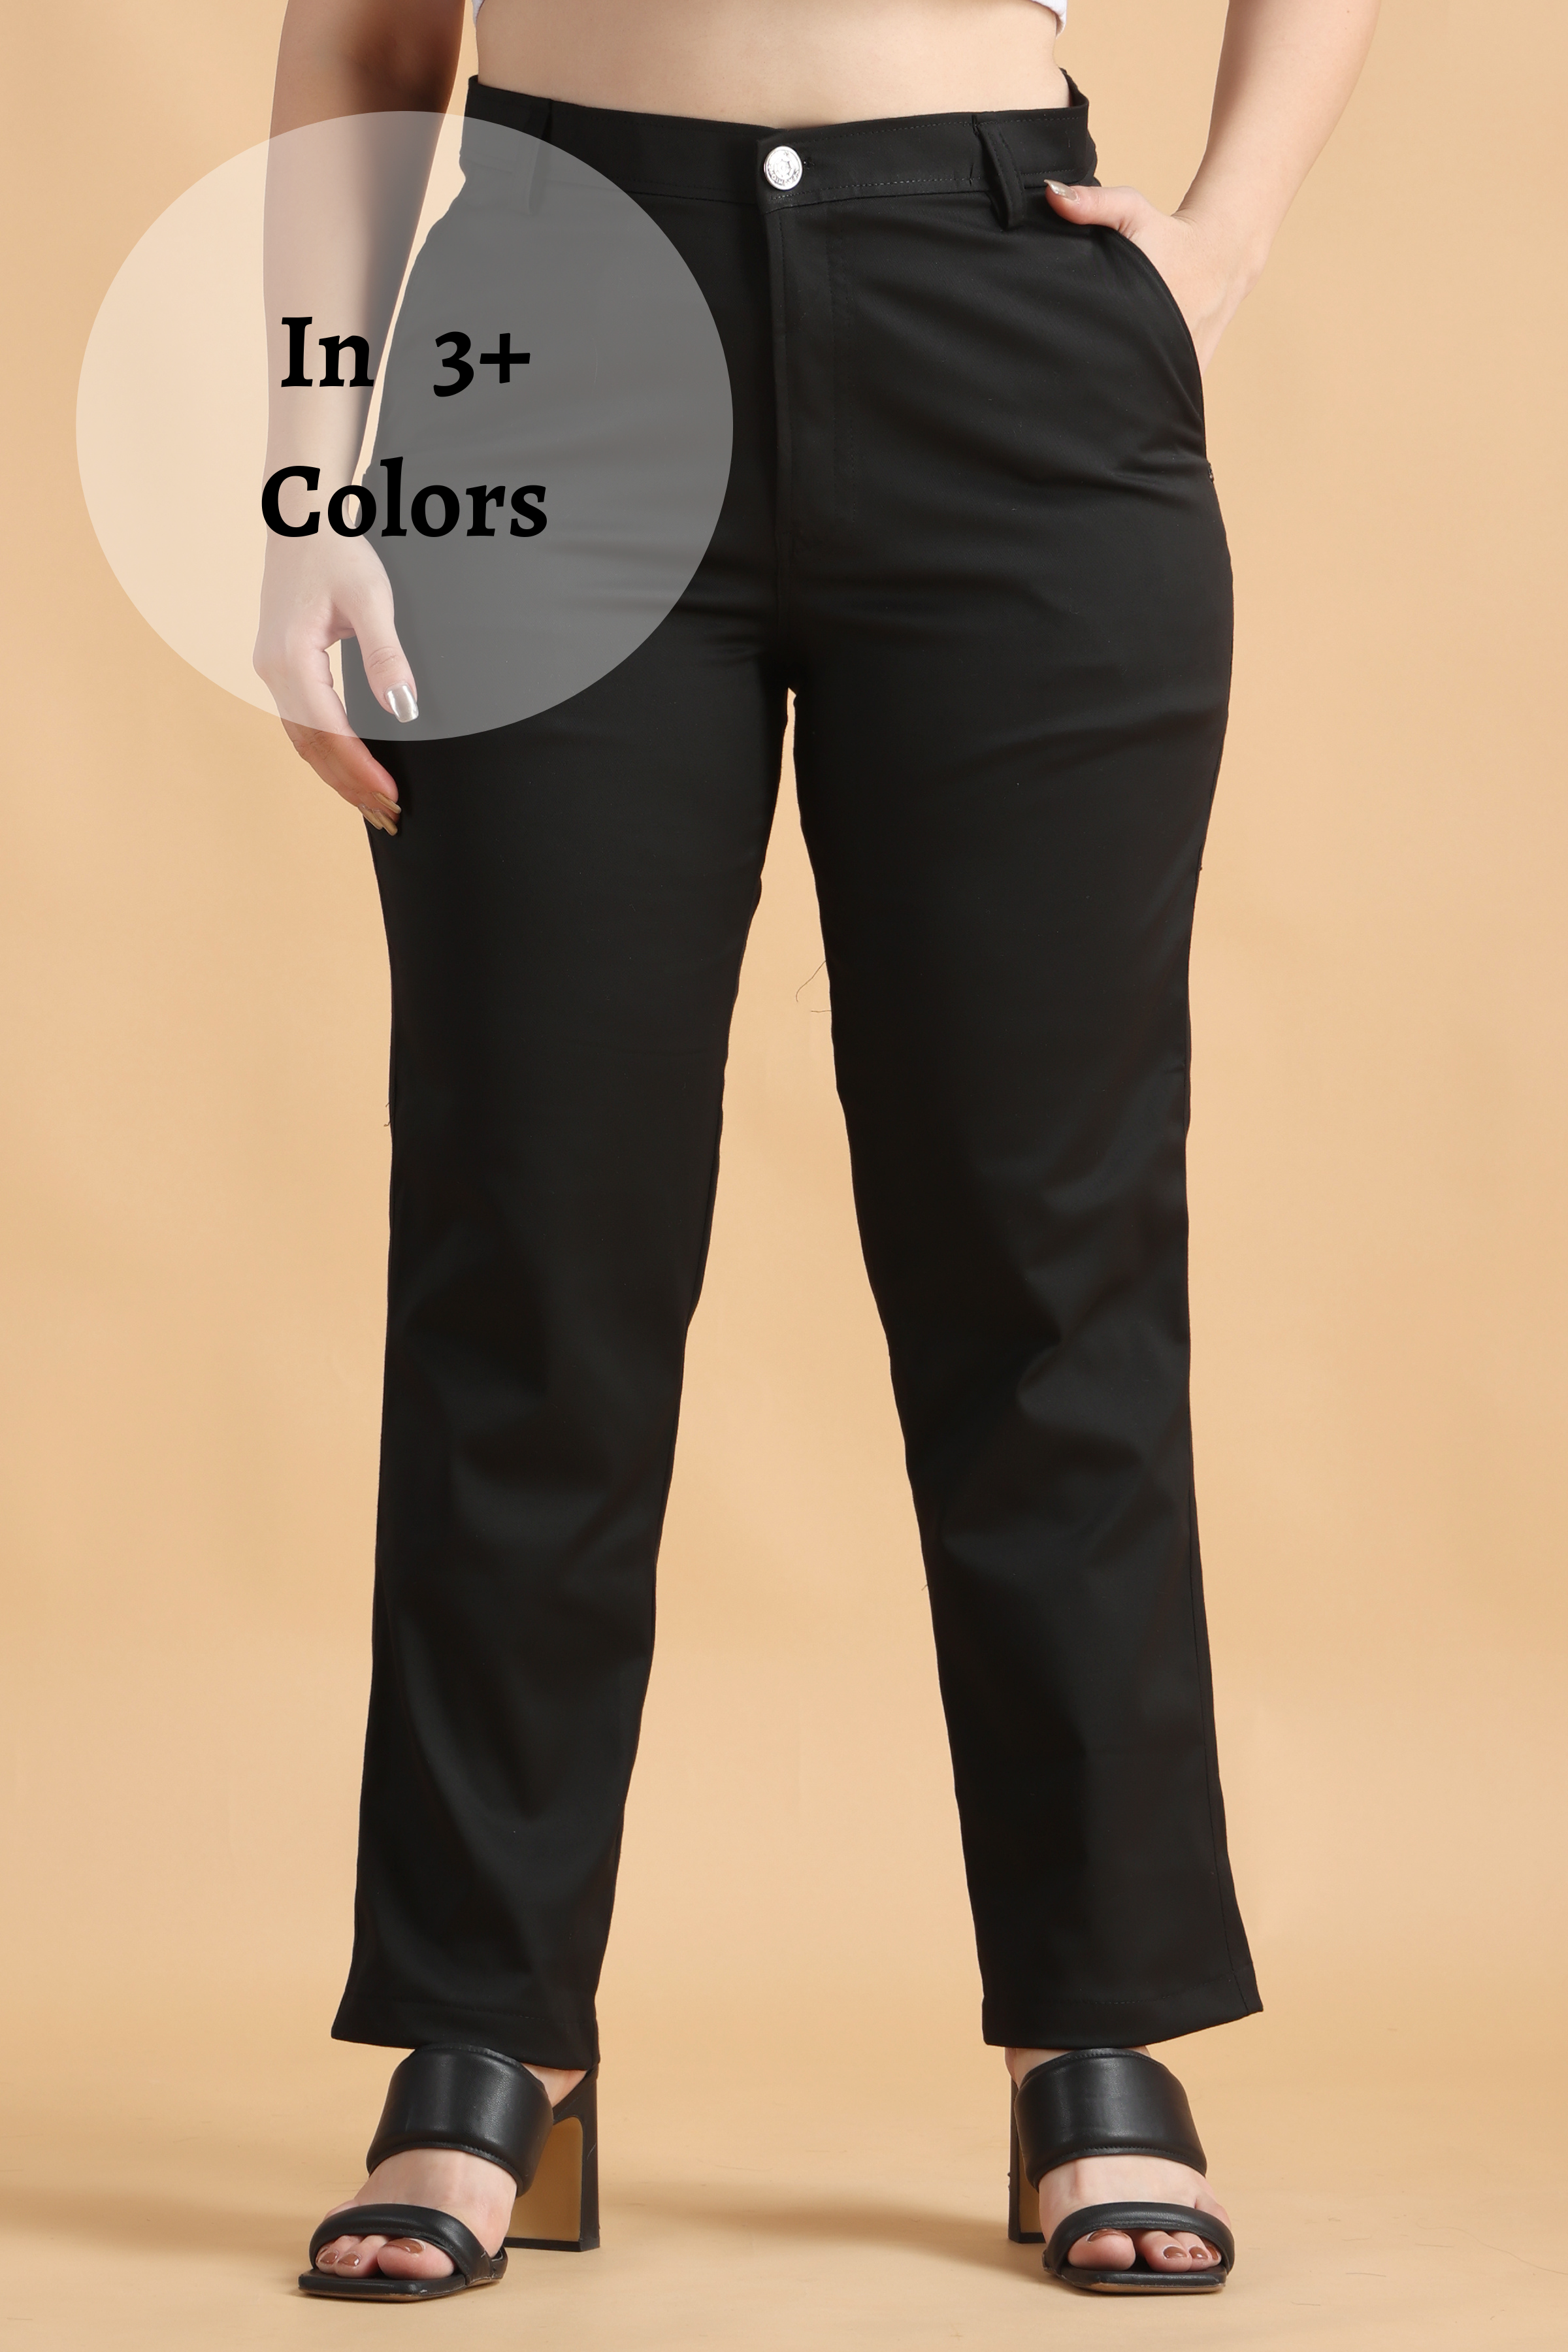 Women Cotton Roma Slim Fit Casual Formal Trouser/Pant – Lapis Blue